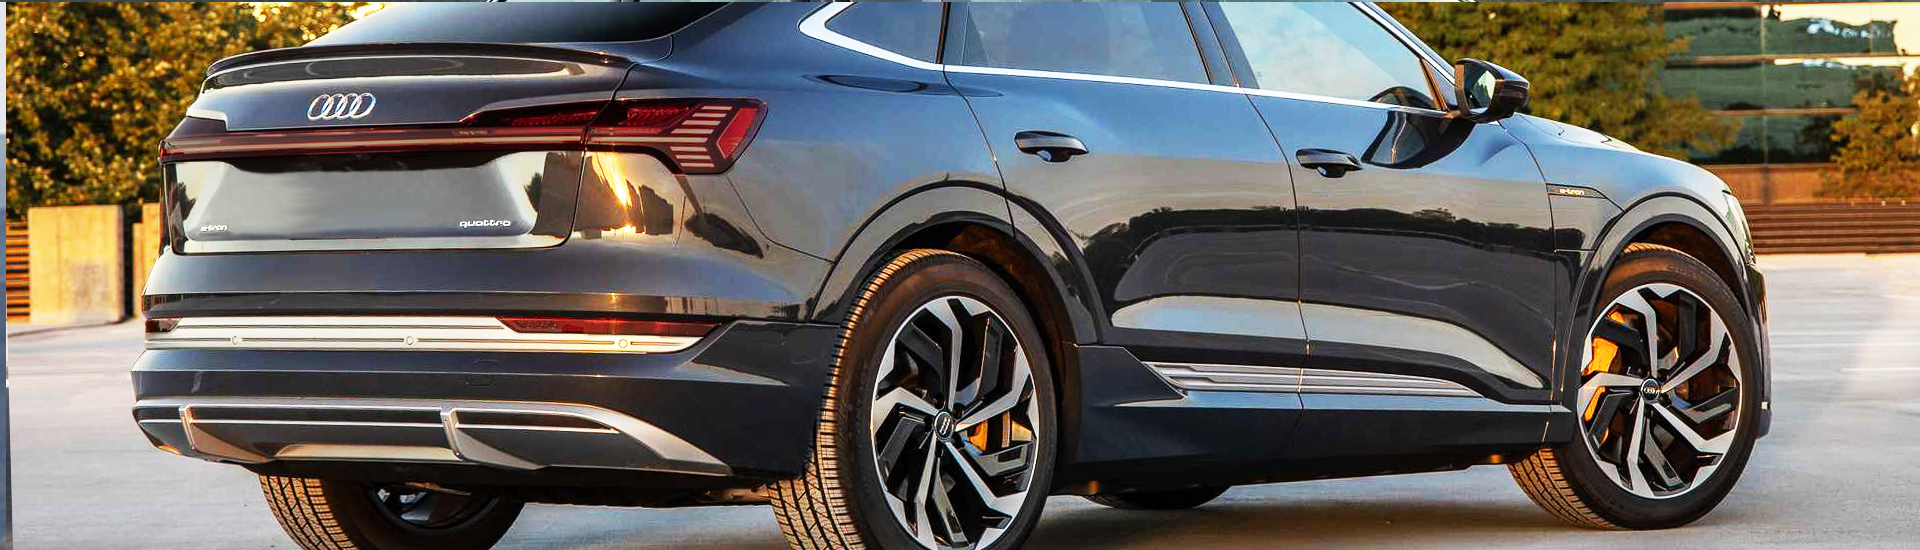 Audi e-tron Tail Light Tint Covers